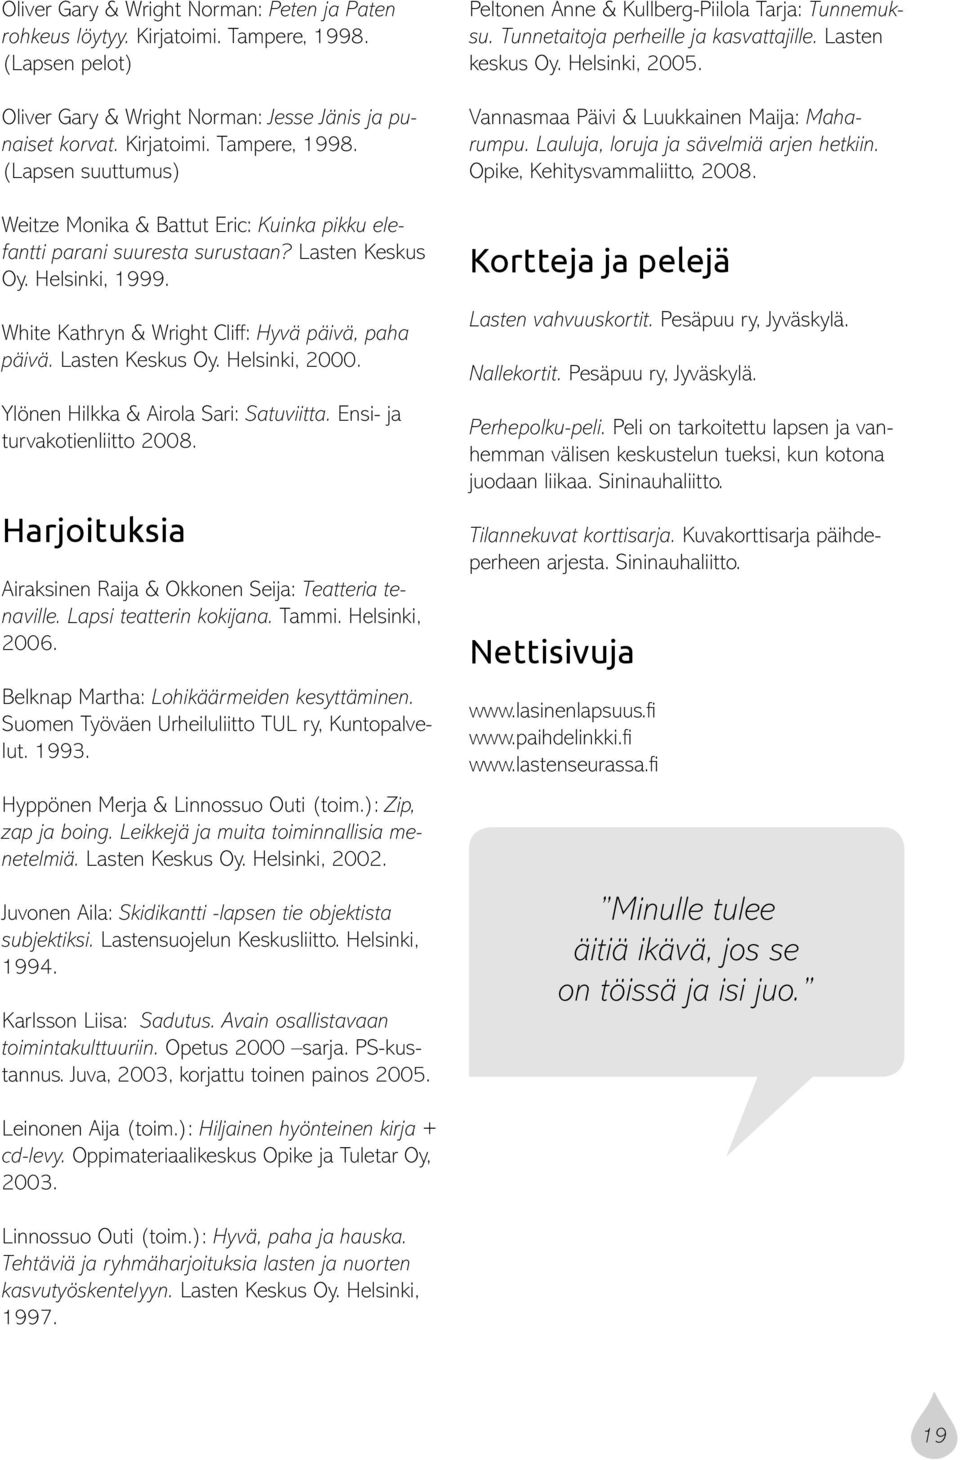 Harjoituksia Airaksinen Raija & Okkonen Seija: Teatteria tenaville. Lapsi teatterin kokijana. Tammi. Helsinki, 2006. Belknap Martha: Lohikäärmeiden kesyttäminen.